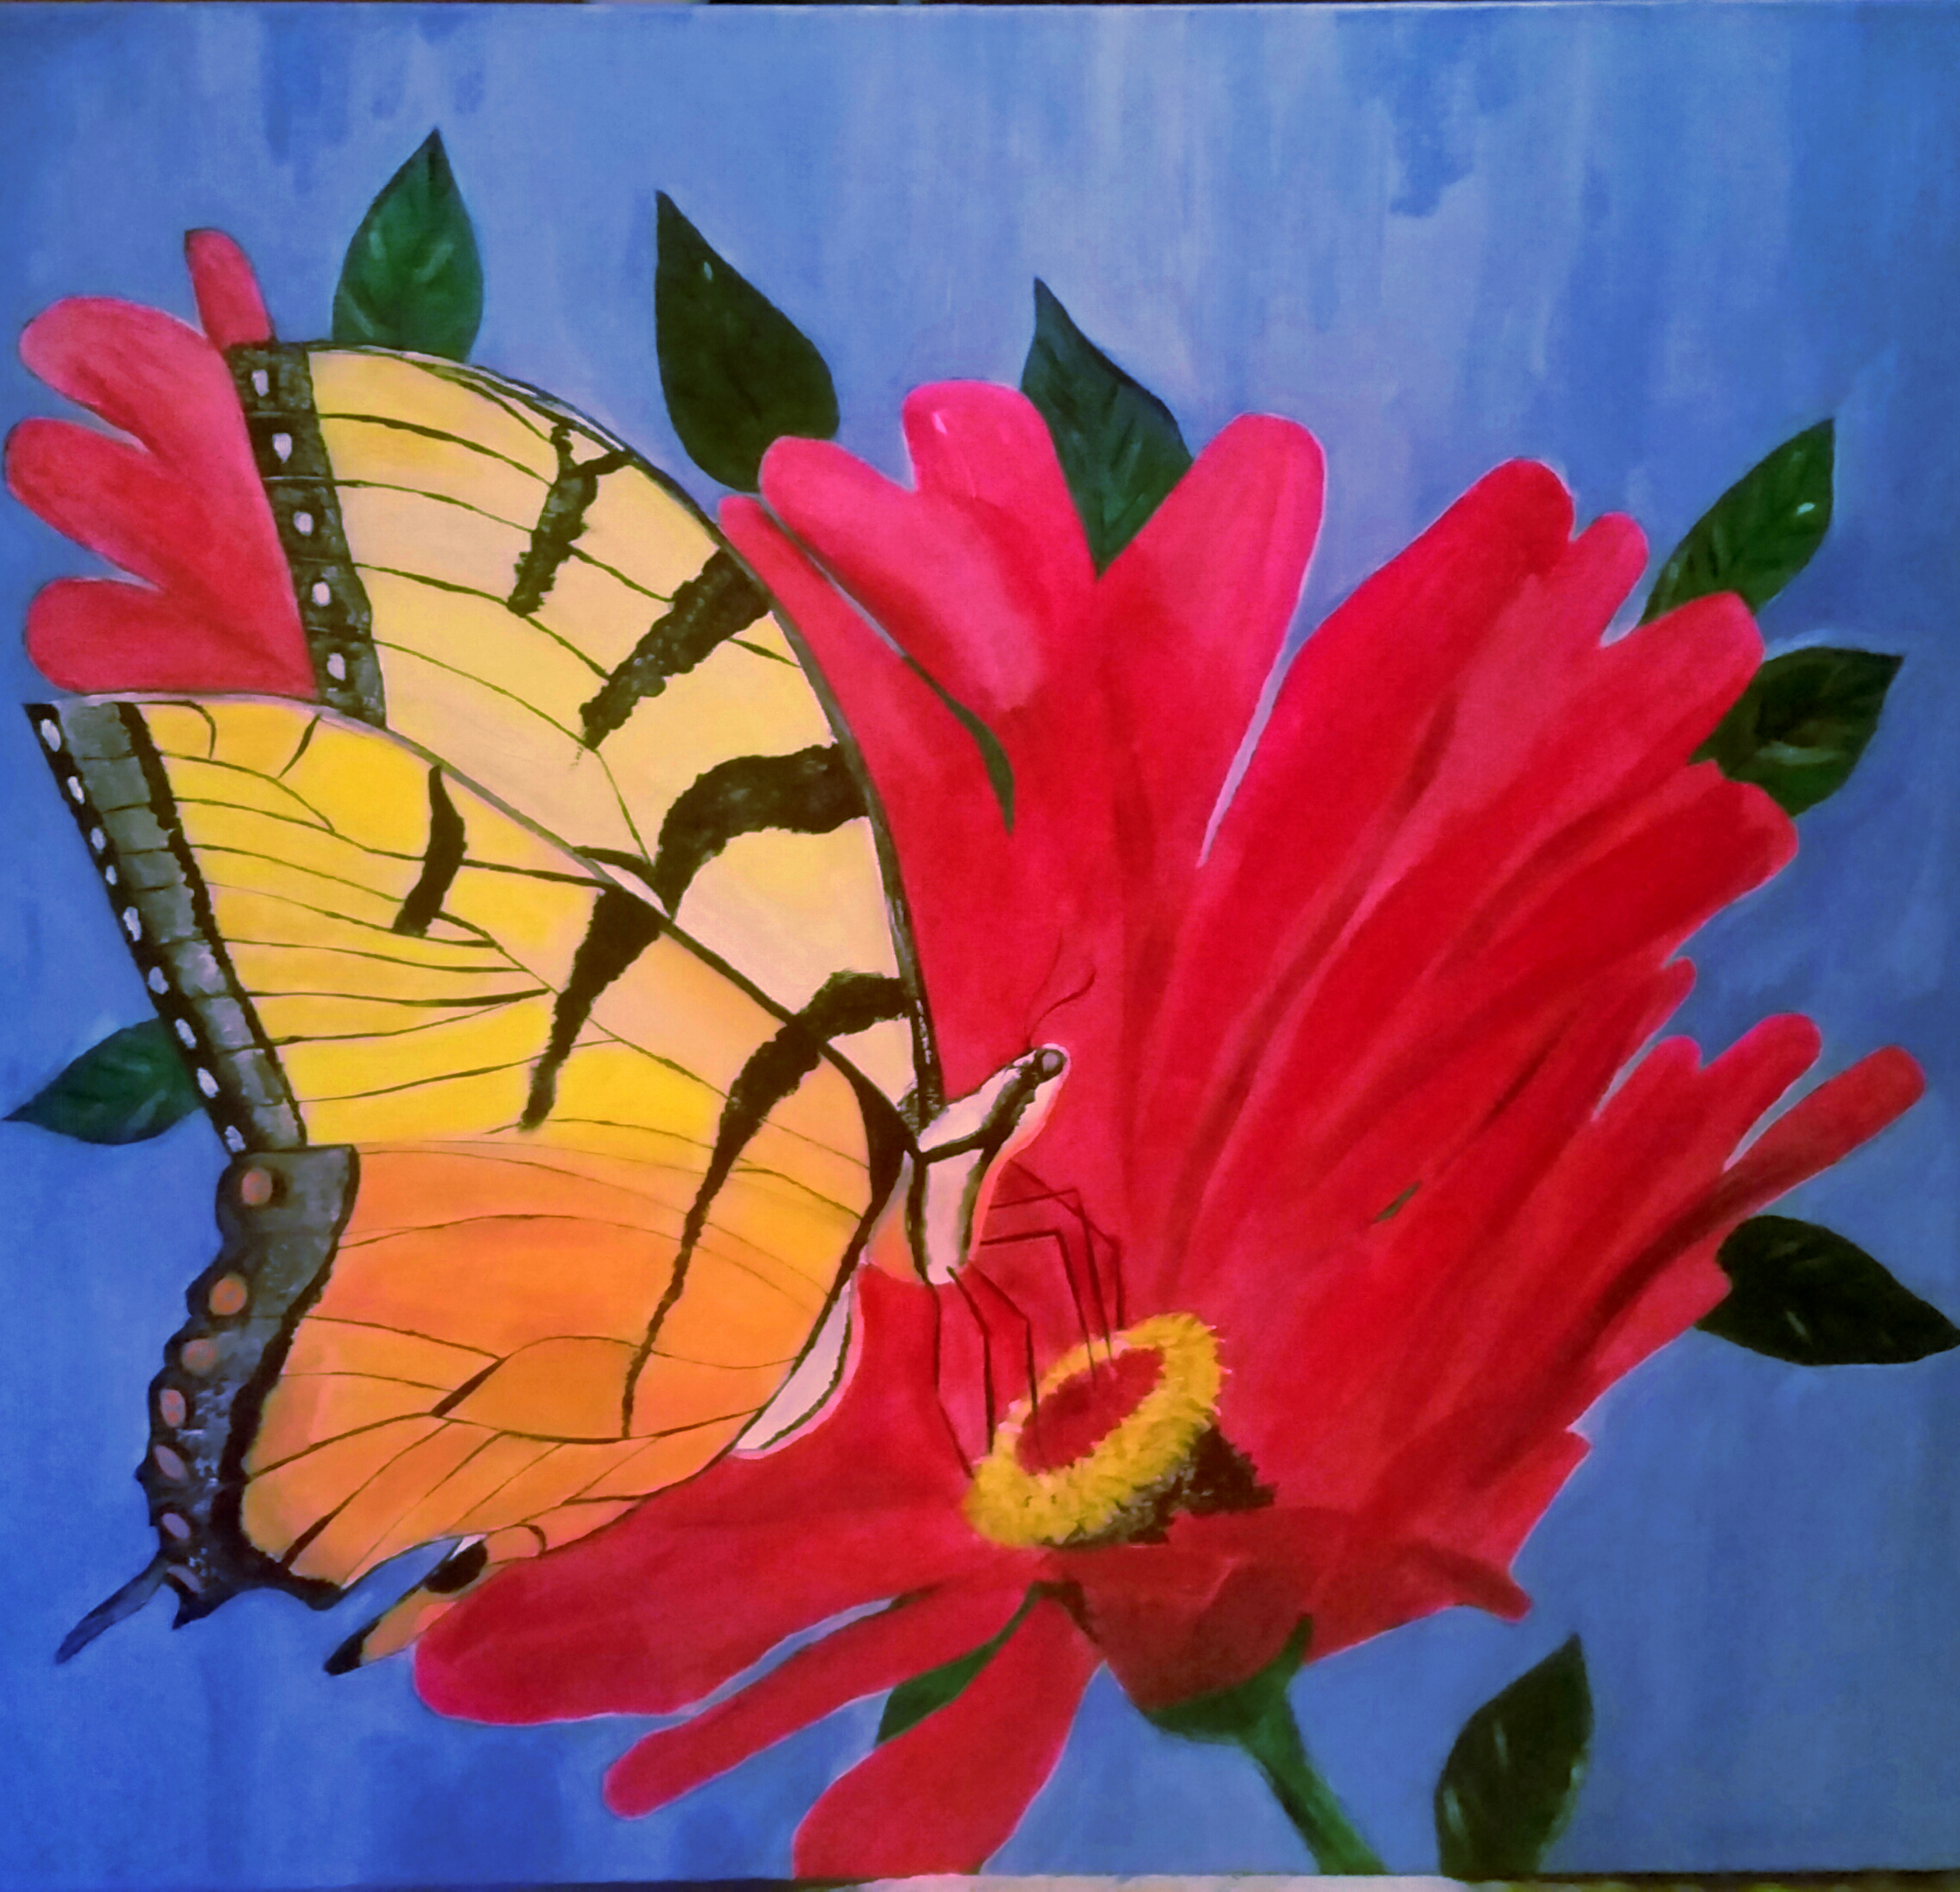 Butterfly on Flower 24 x 24